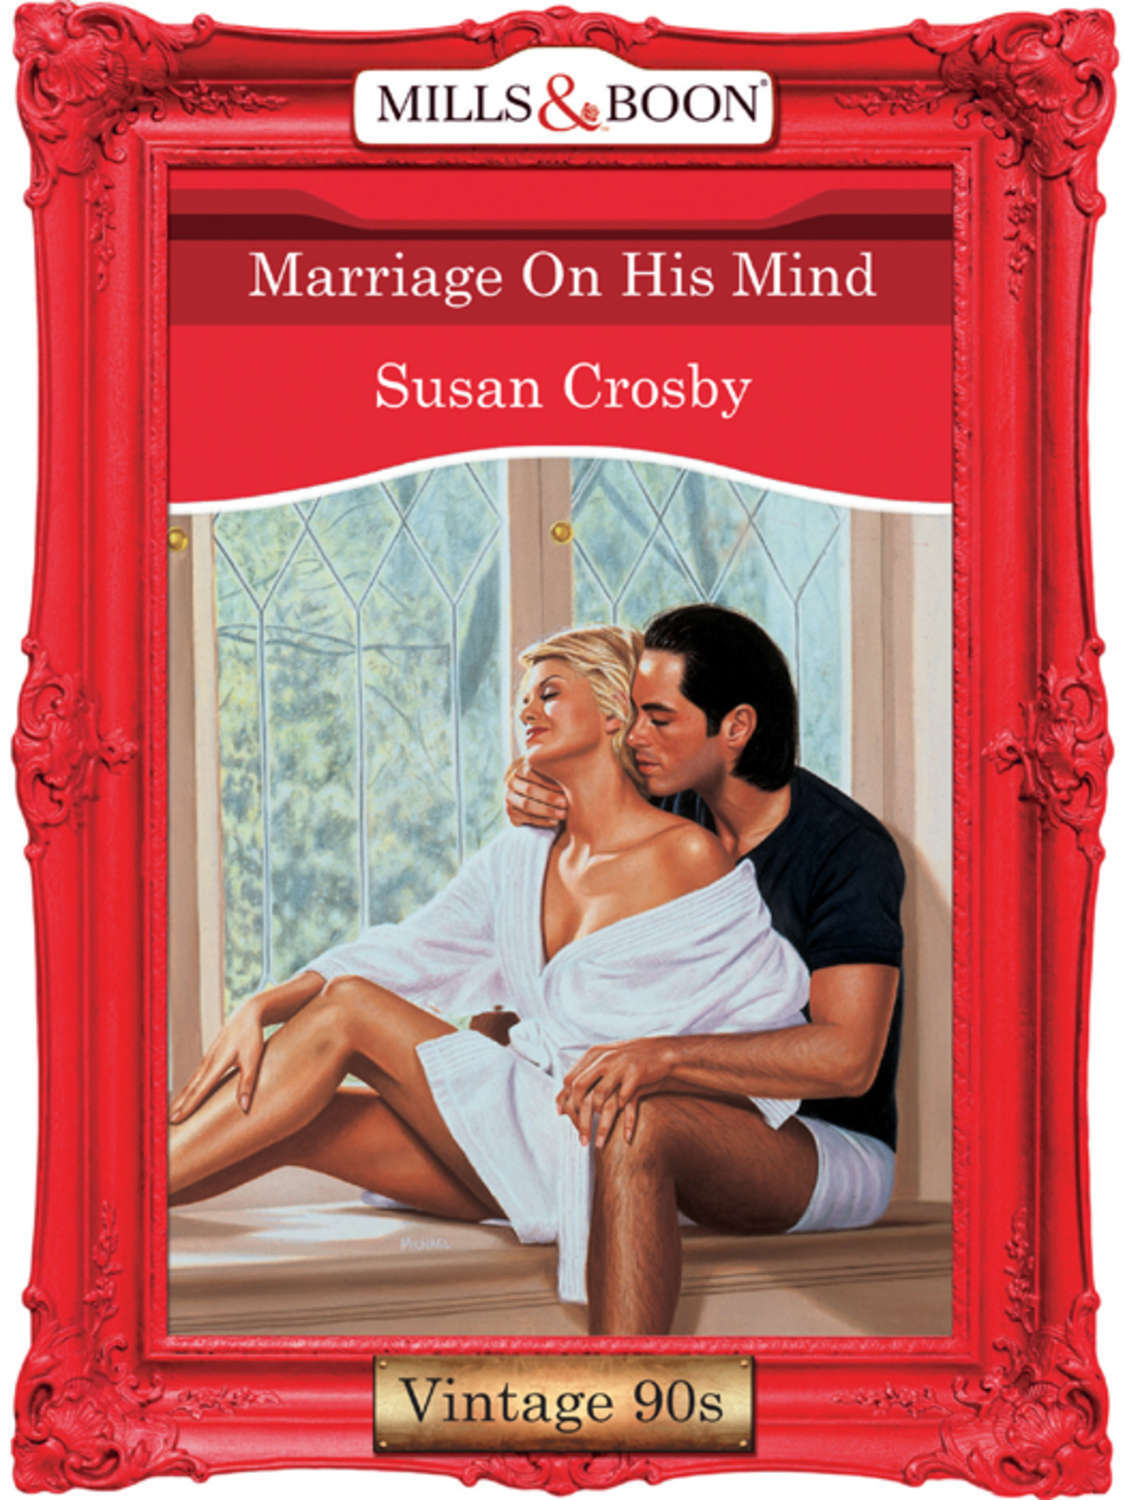 Читать книги про брак. Книга про брак. Тайны семейные и любовные Сьюзен Кросби Озон. Неудачный брак книга.